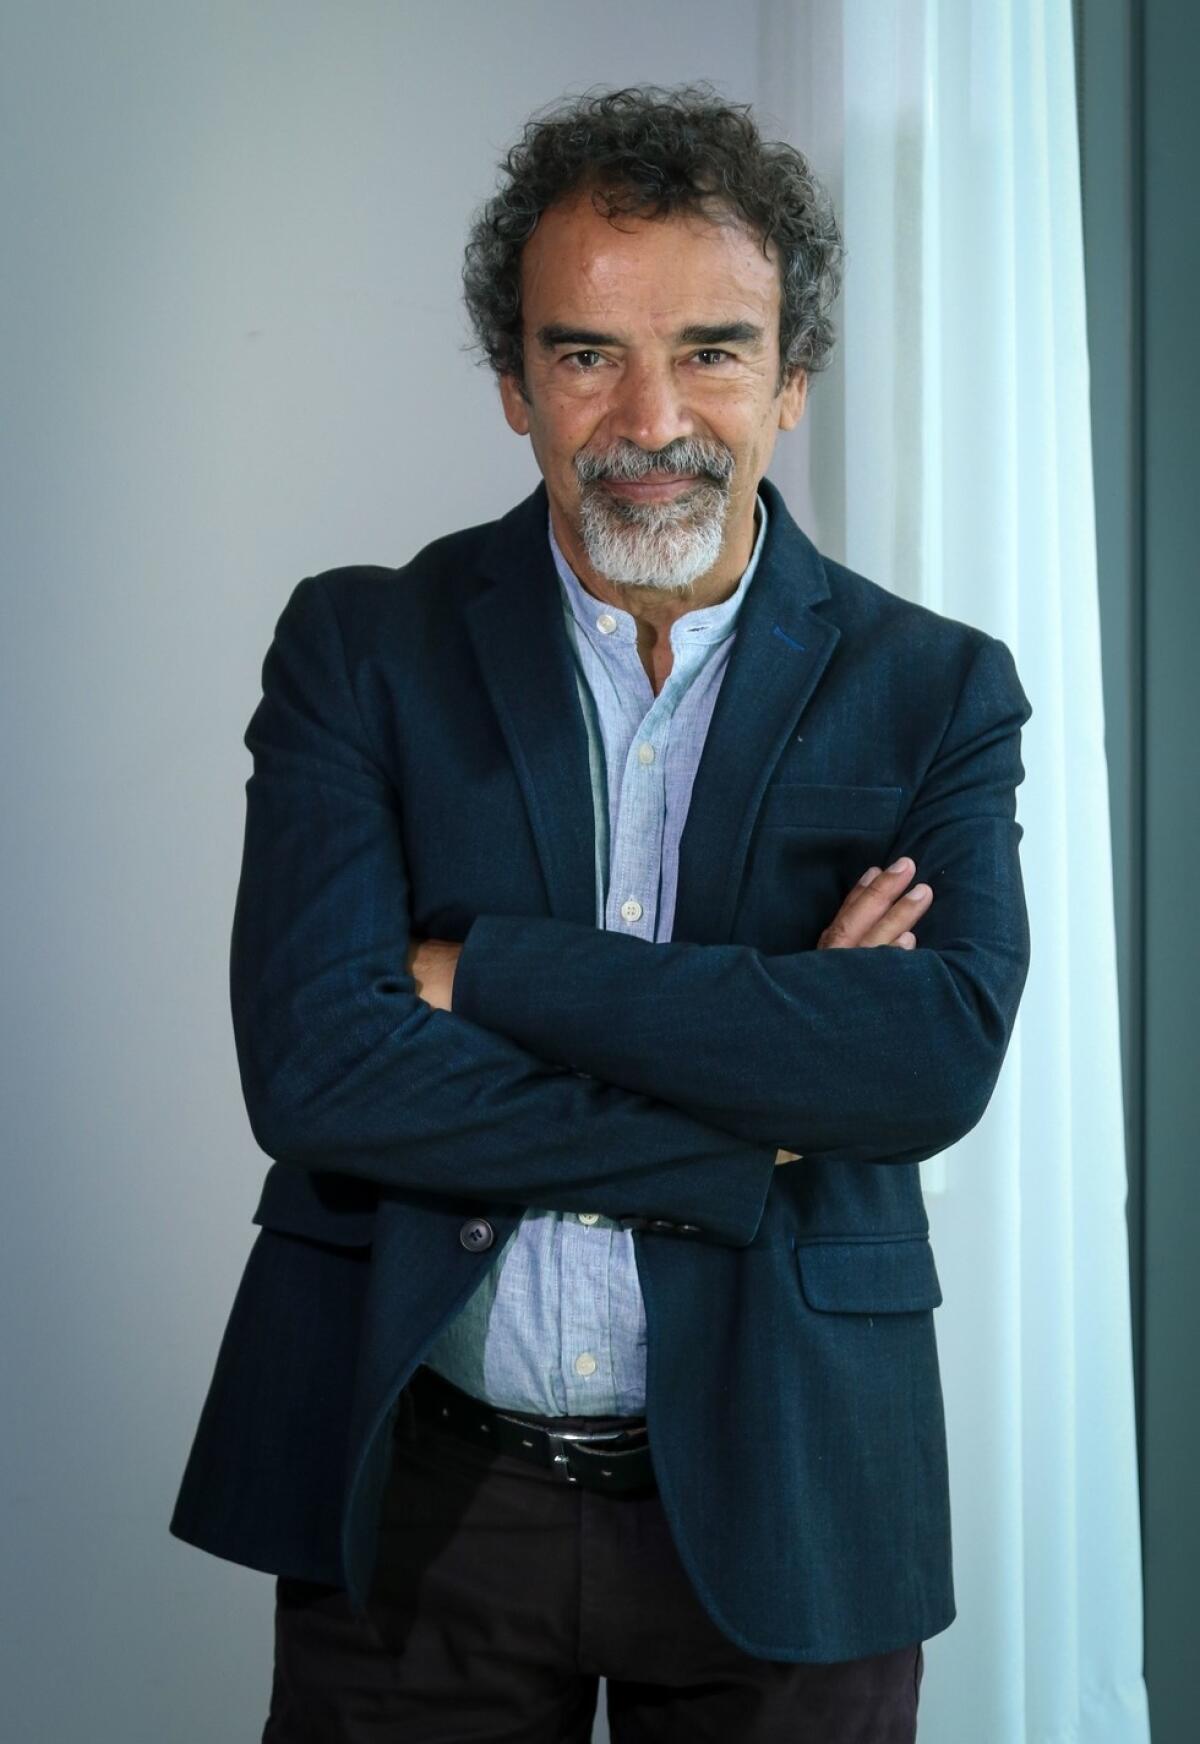 Damián Alcázar, actor mexicano conocido por cintas como "La ley de Herodes", "Bala mordida" y más.